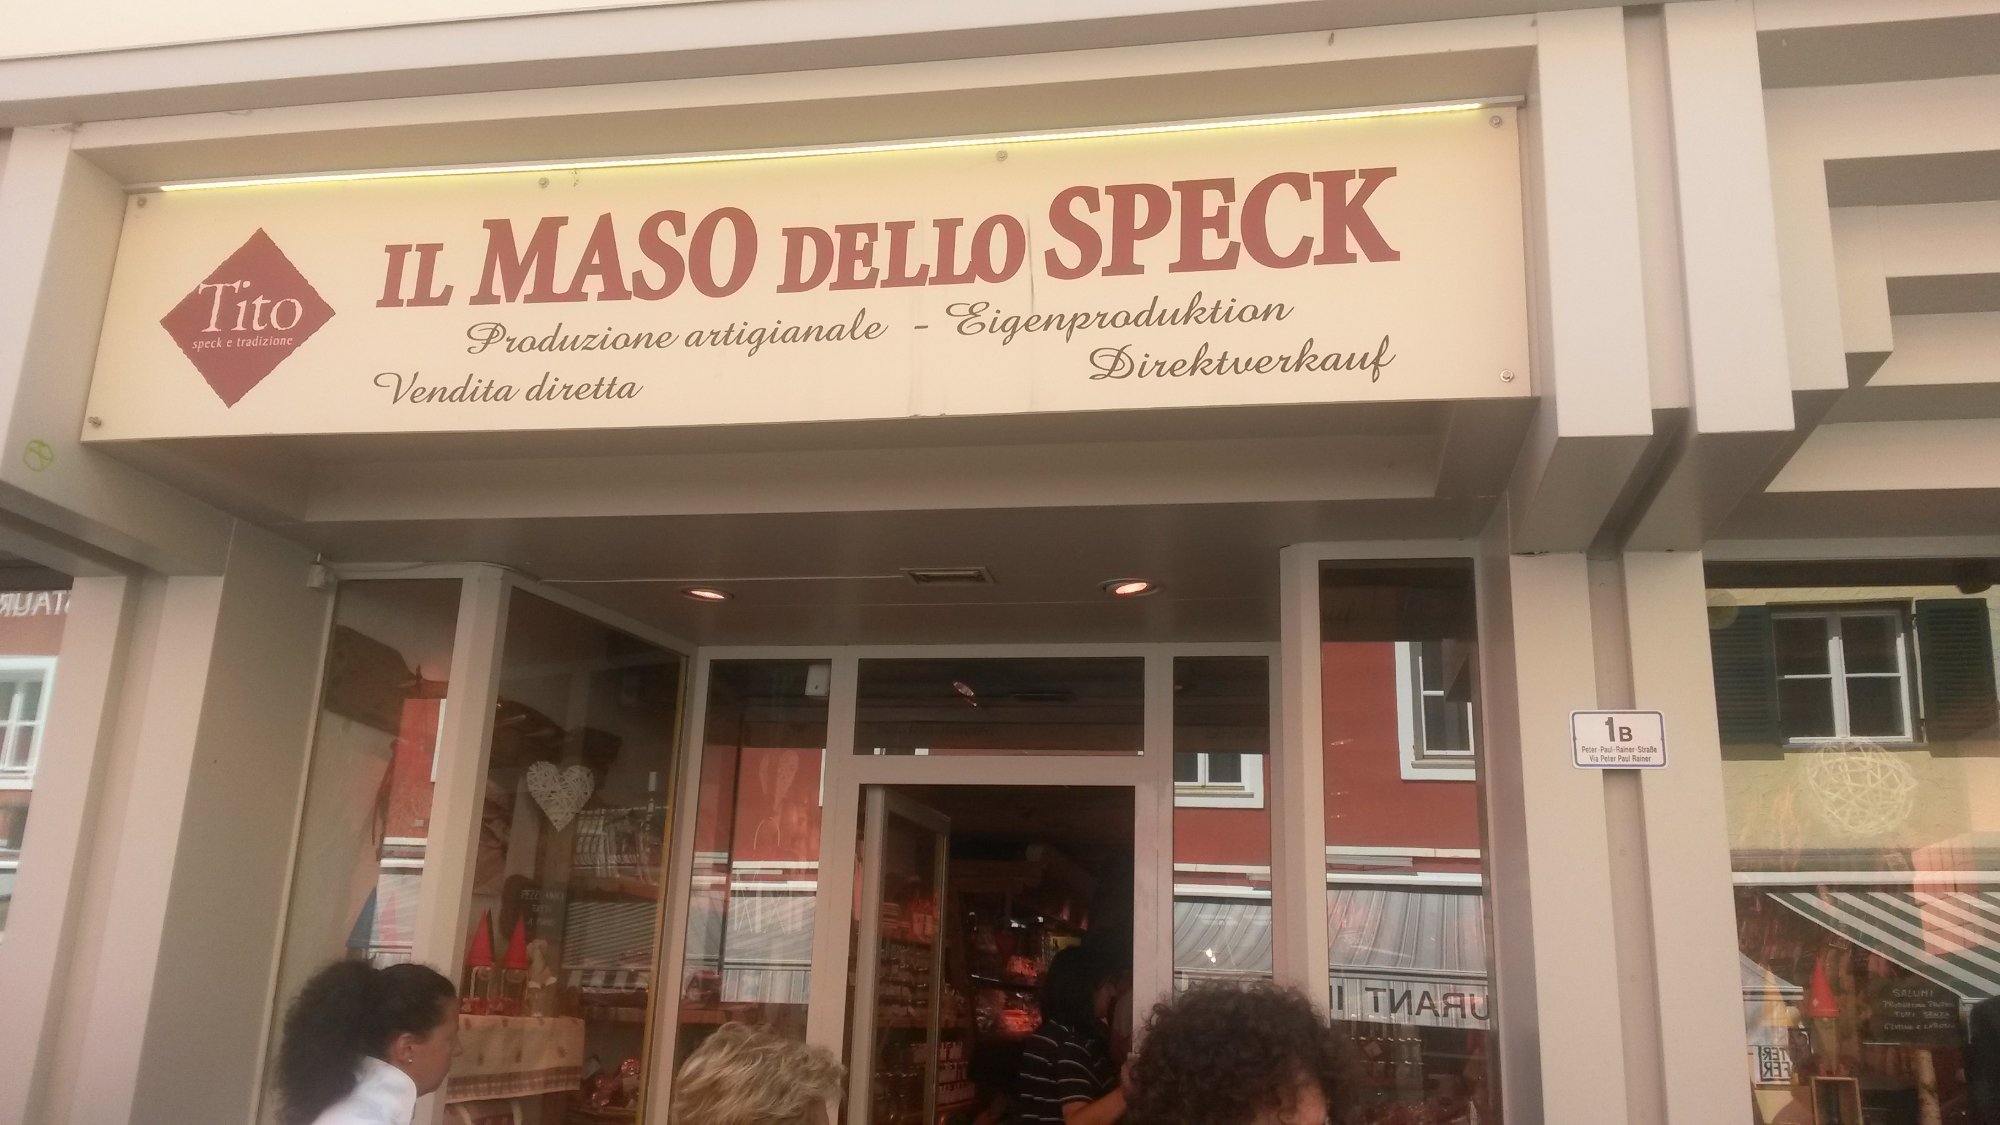 Il Maso dello Speck - Da Tito